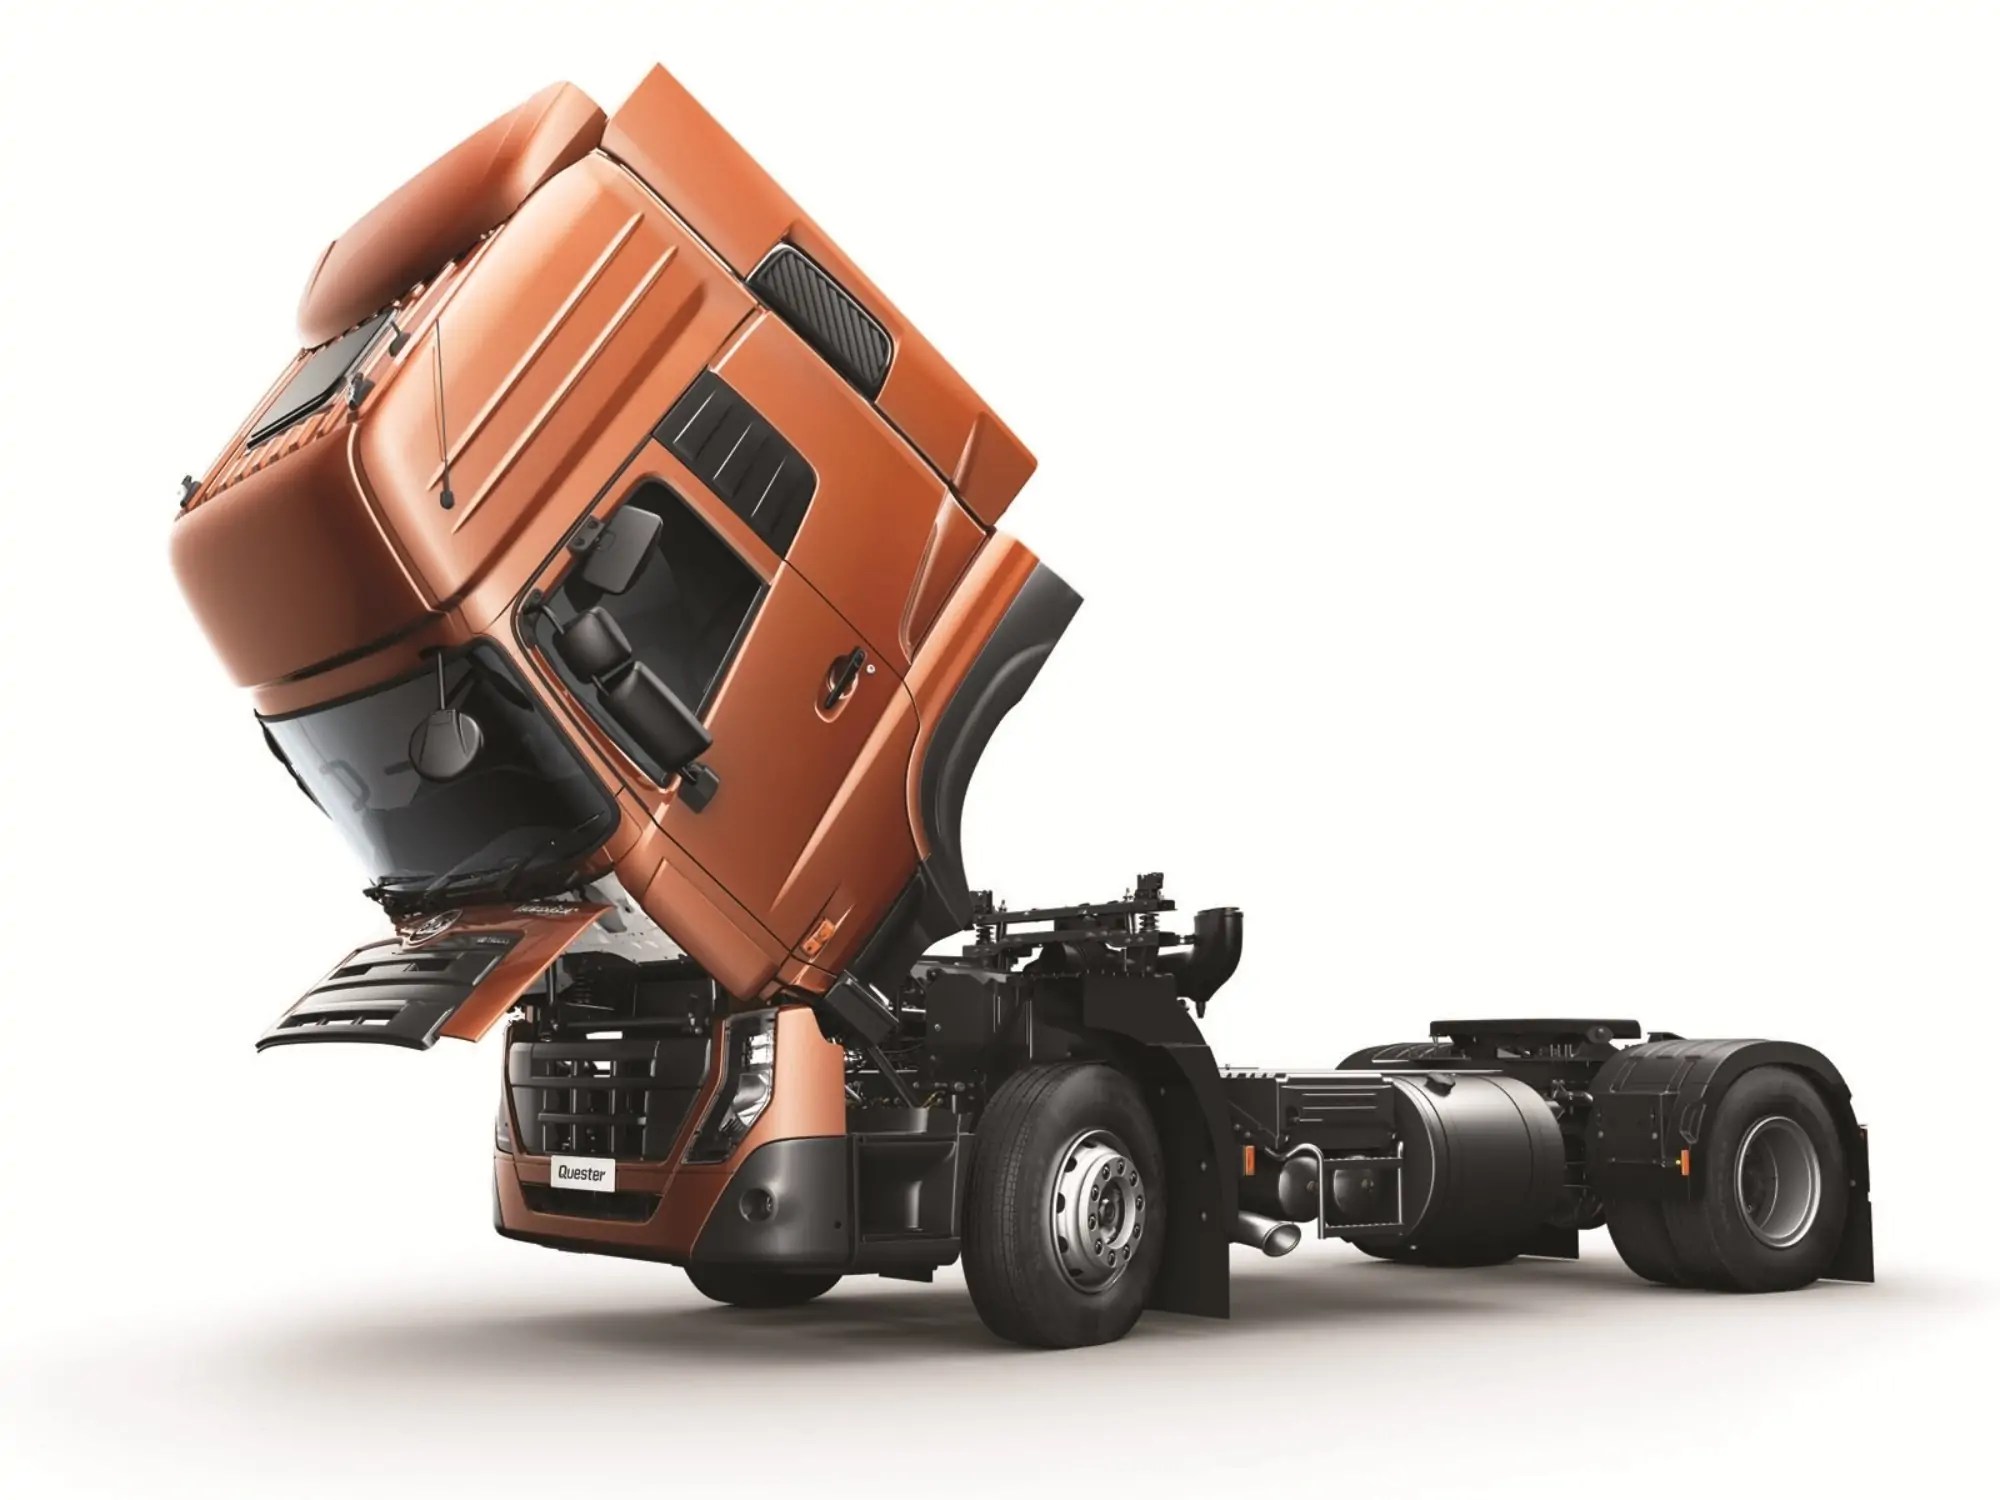 نمو بارز لمبيعات شاحنات UD Trucks في أسواق الشرق الاوسط وشمال أفريقيا